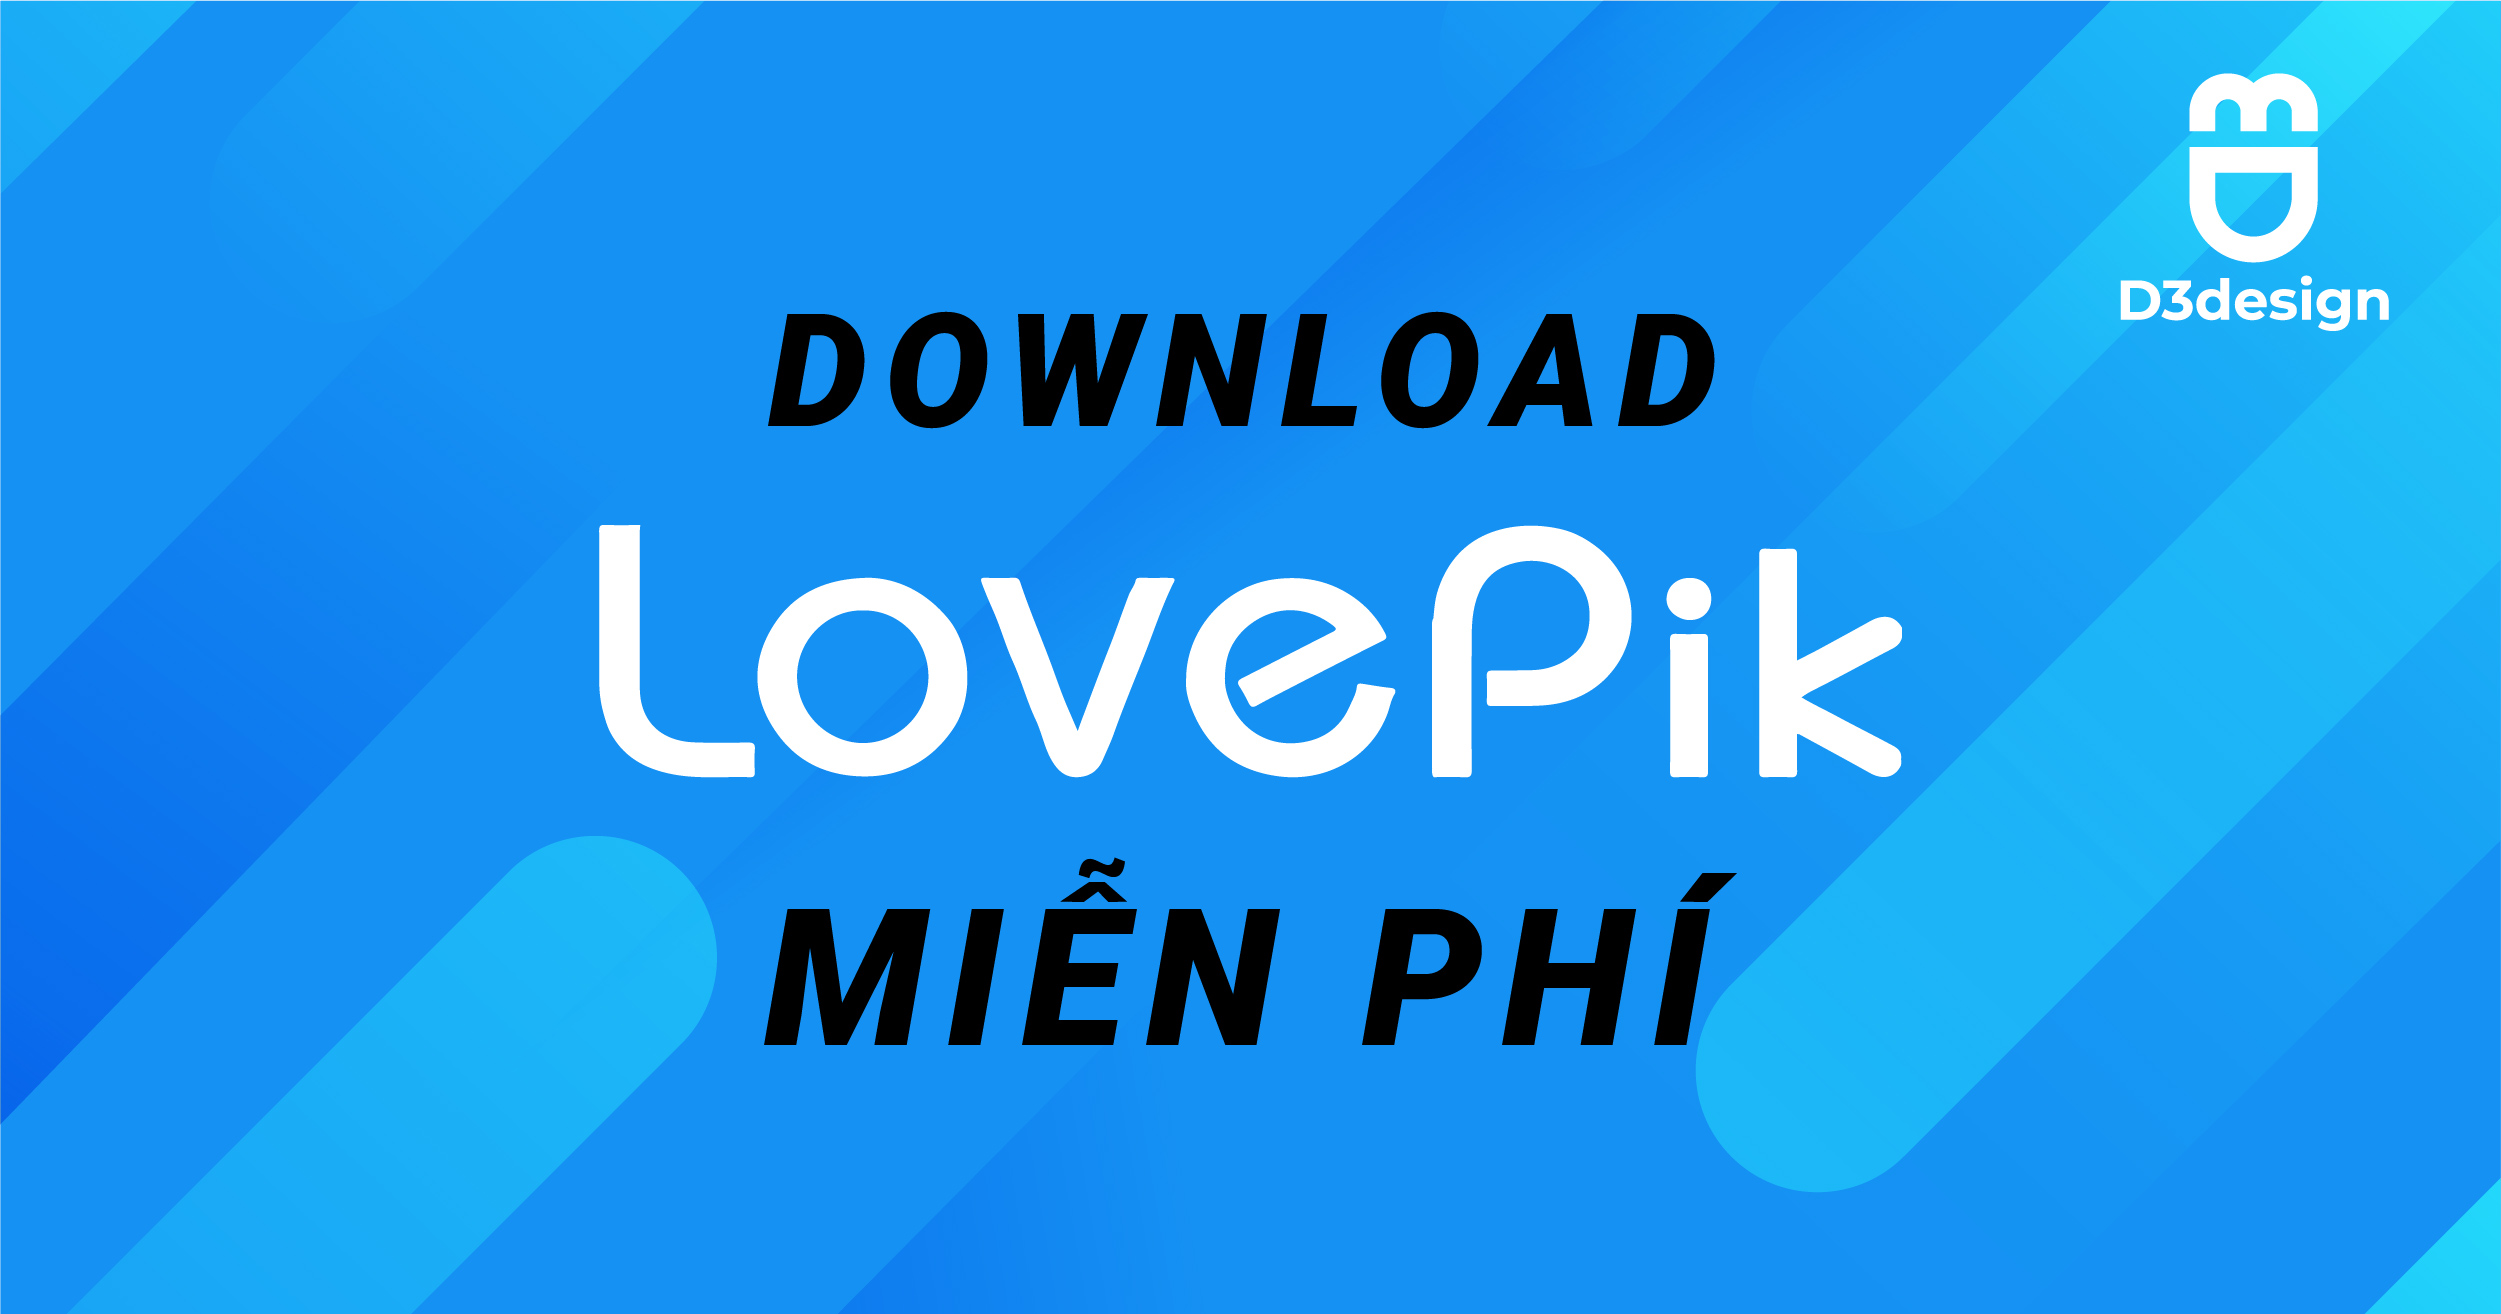 Tải Lovepik Miễn Phí | Download Lovepik Free